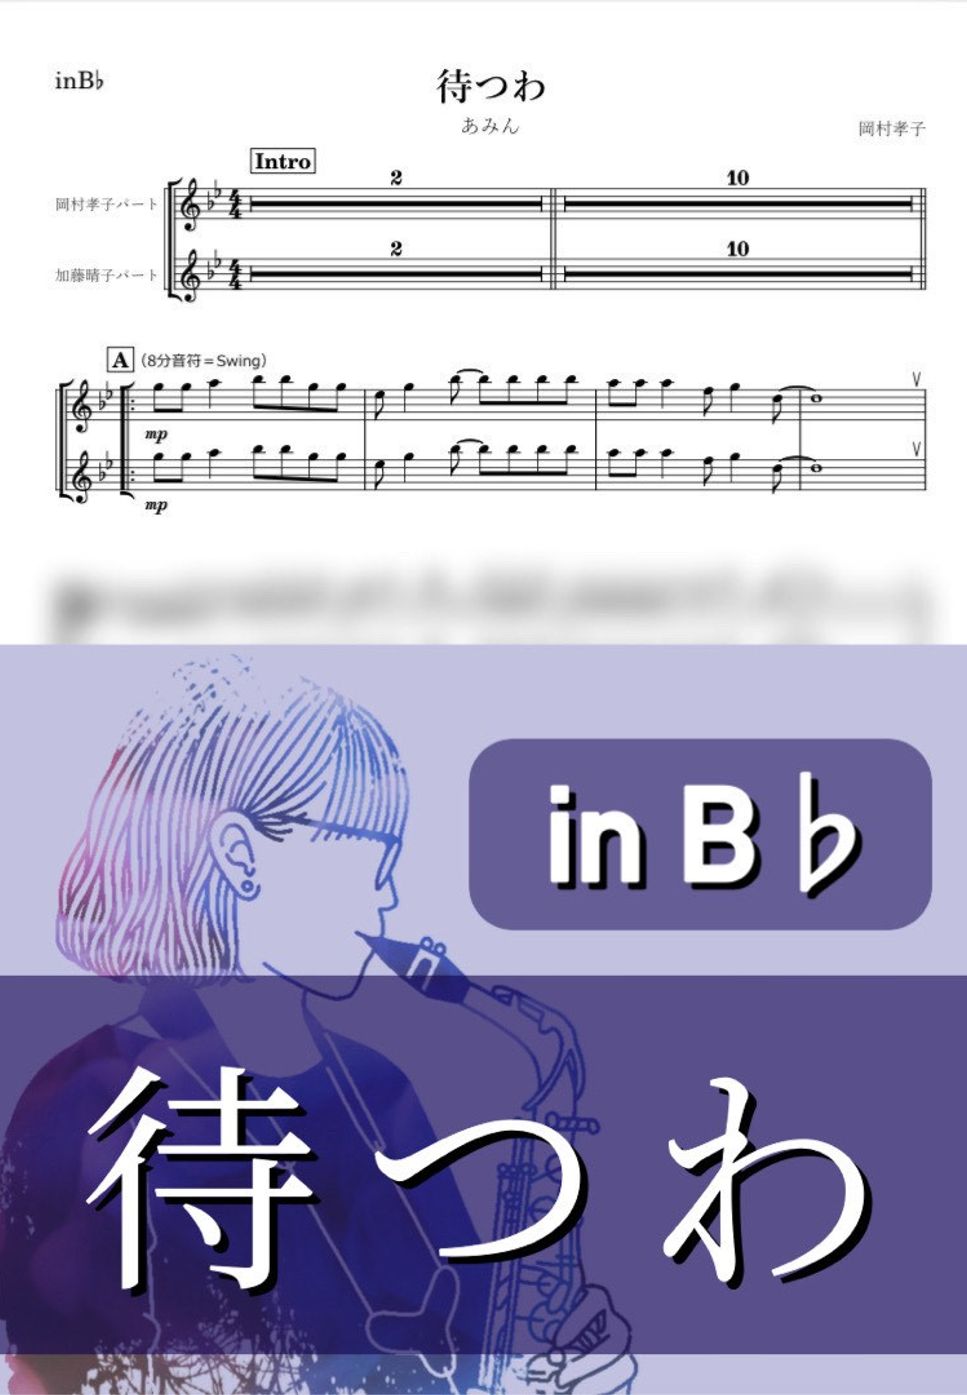 あみん - 待つわ (B♭) by kanamusic